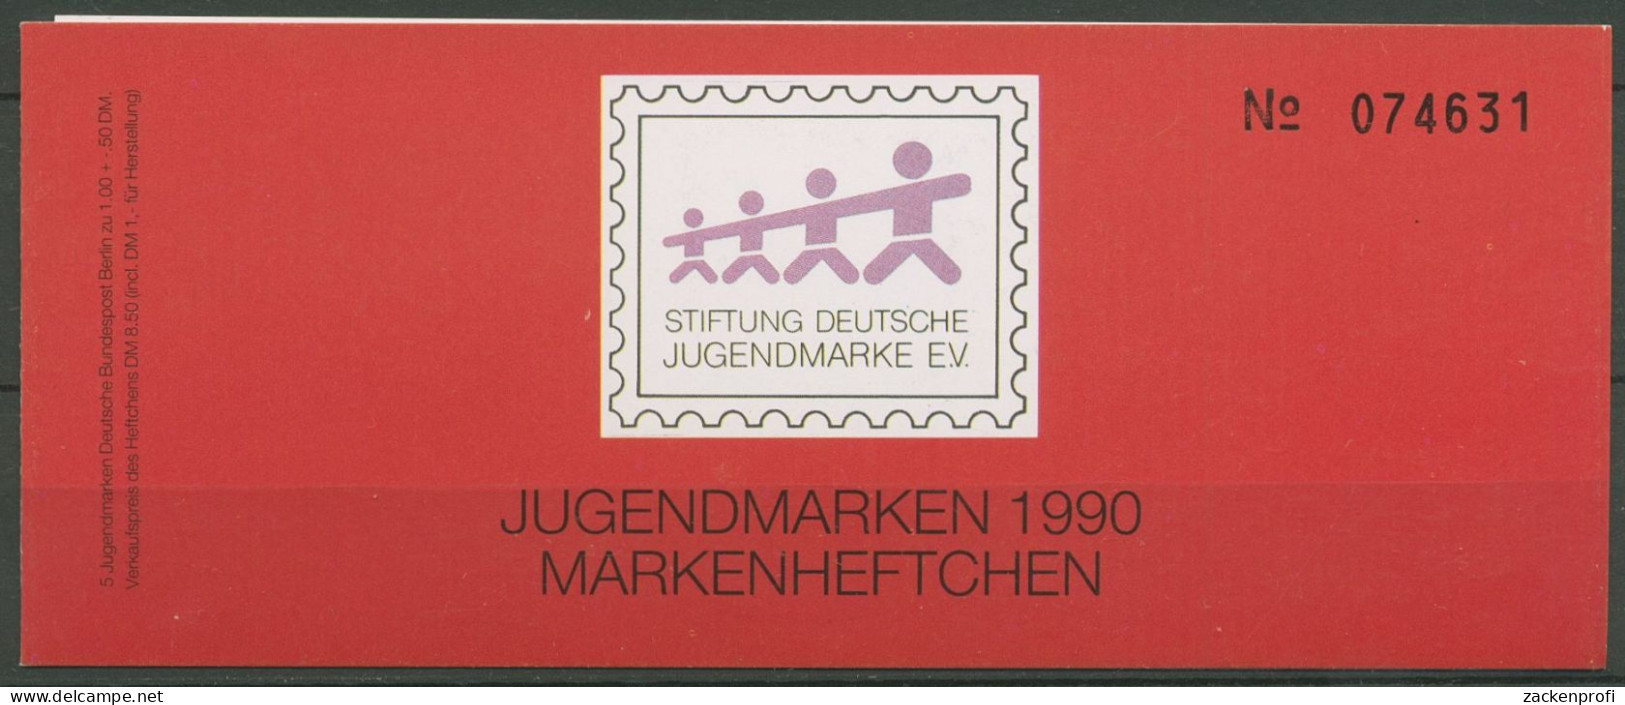 Berlin Jugendmarke 1990 Max & Moritz Markenheftchen 871 MH Postfrisch (C60184) - Libretti